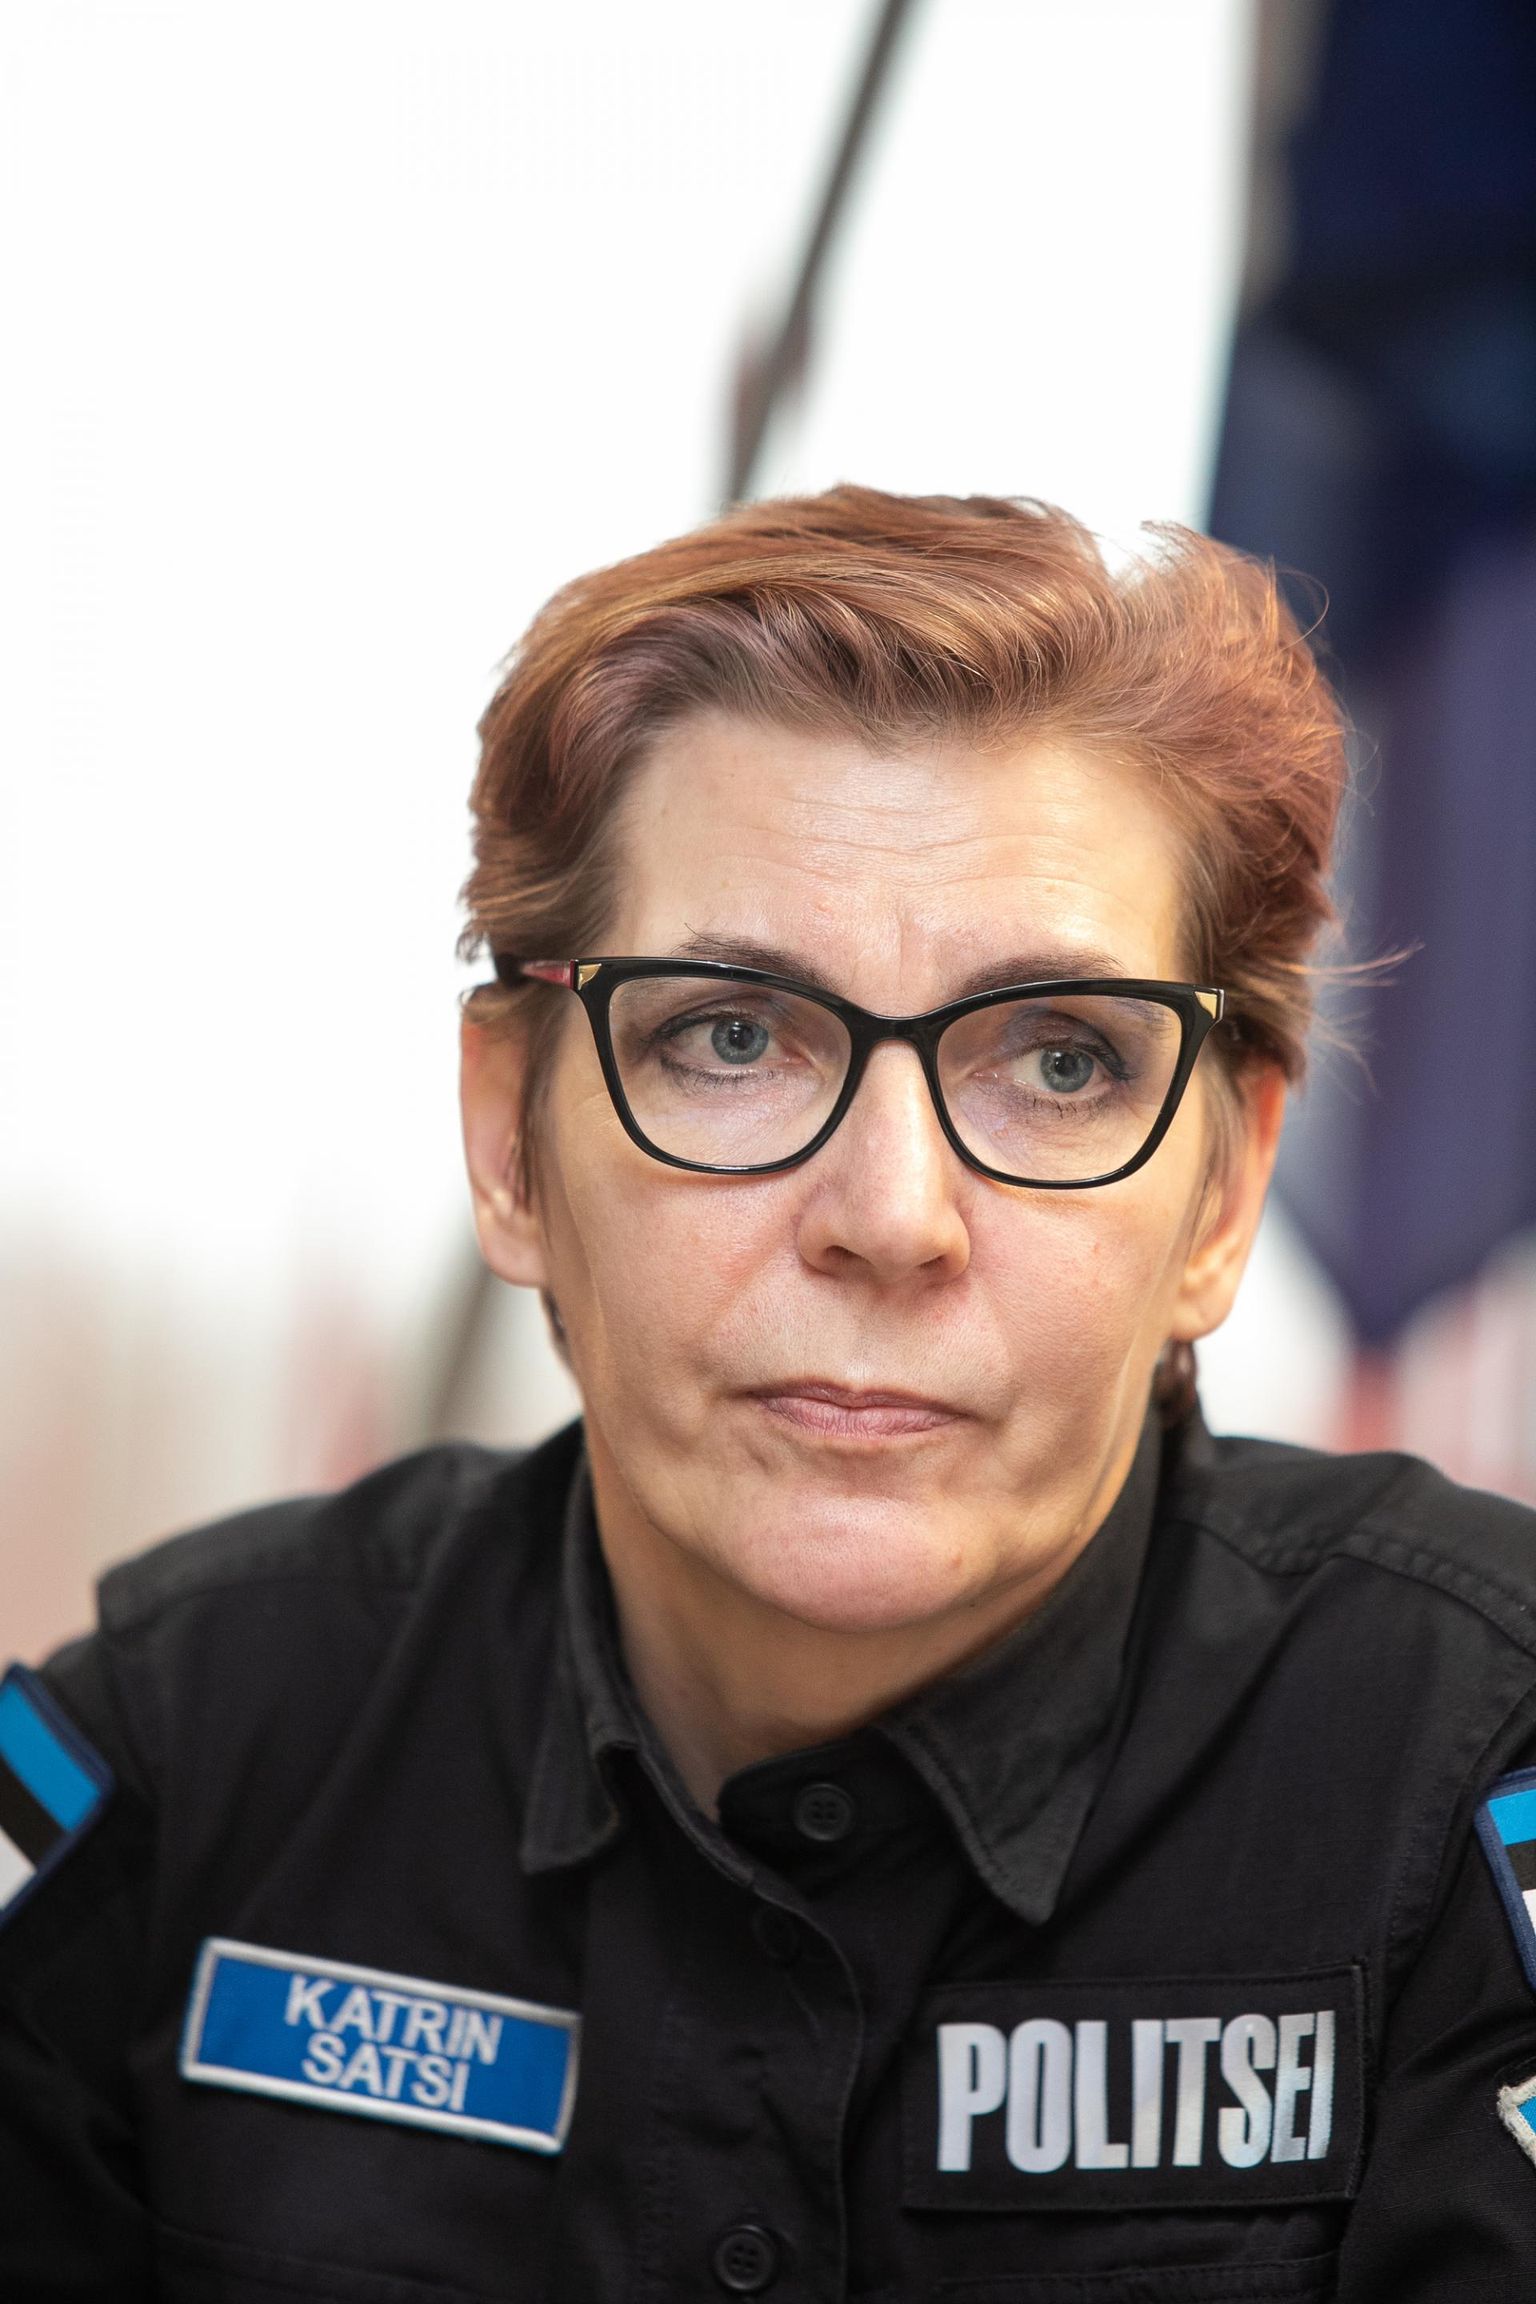 Rakvere politseijaoskonna juht Katrin Satsi kutsub üles märkama võimalikku hädasolijat.